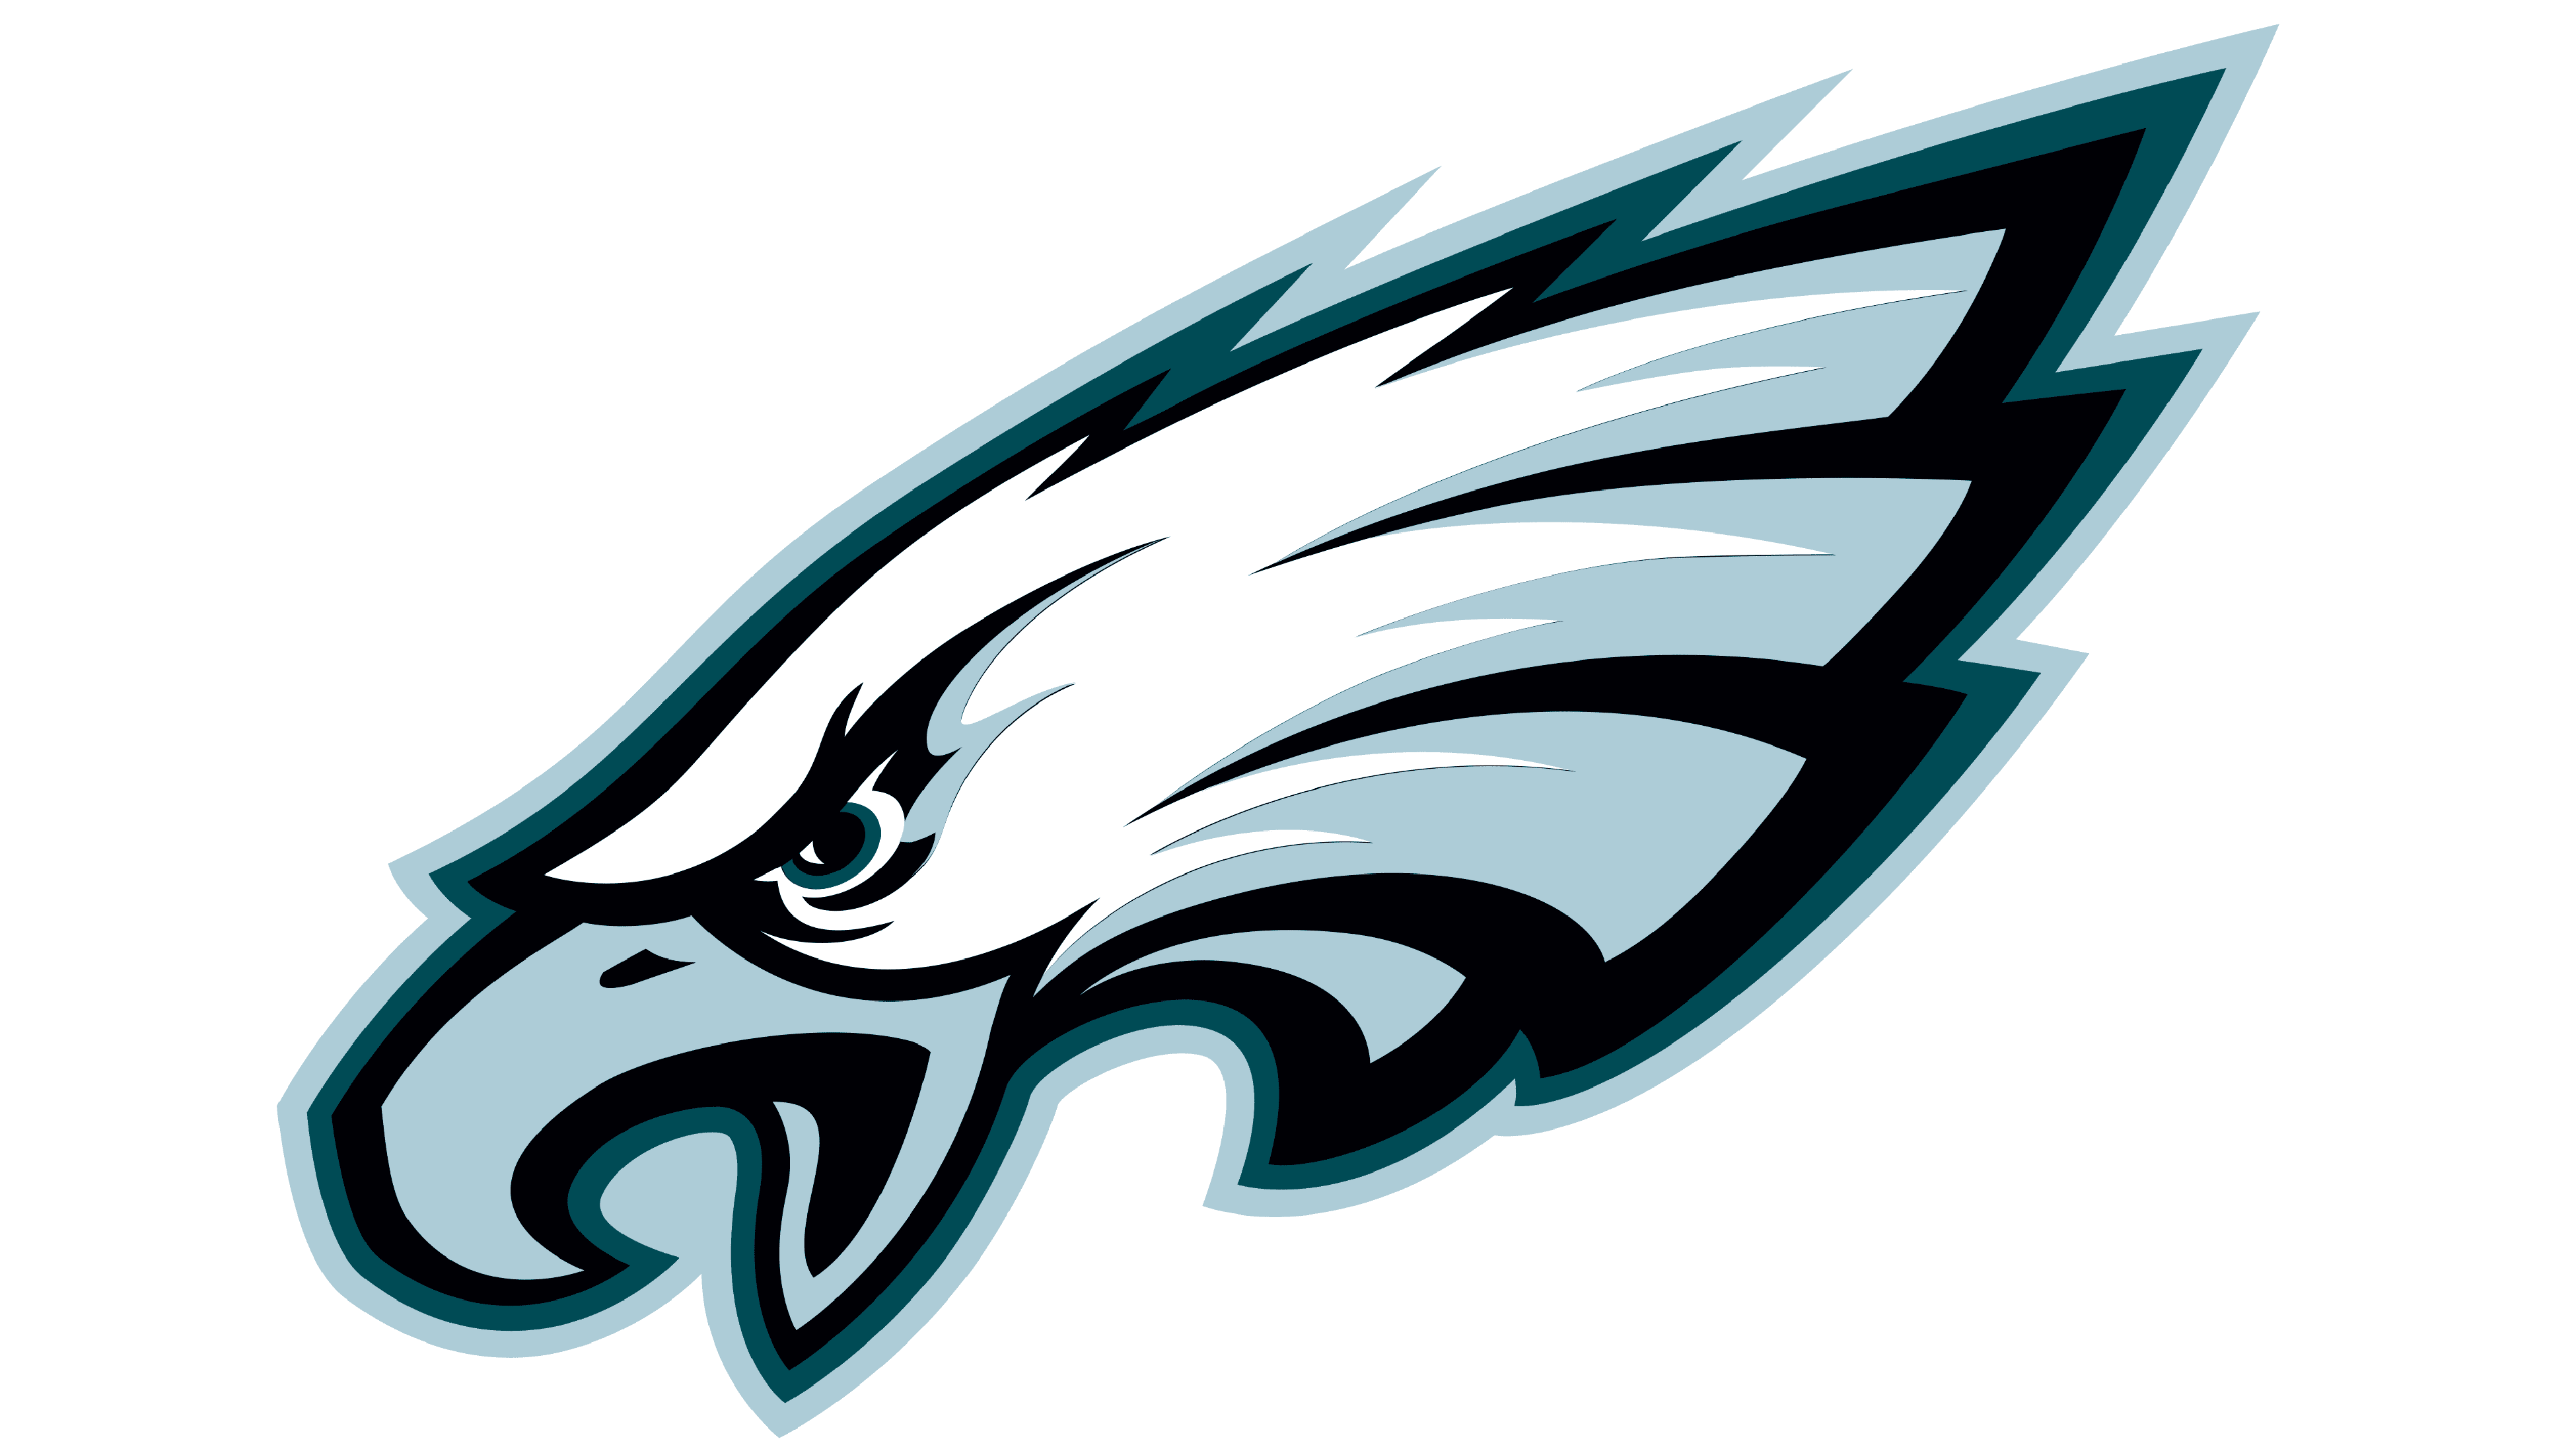 Pictures Of Eagles Logo - KibrisPDR